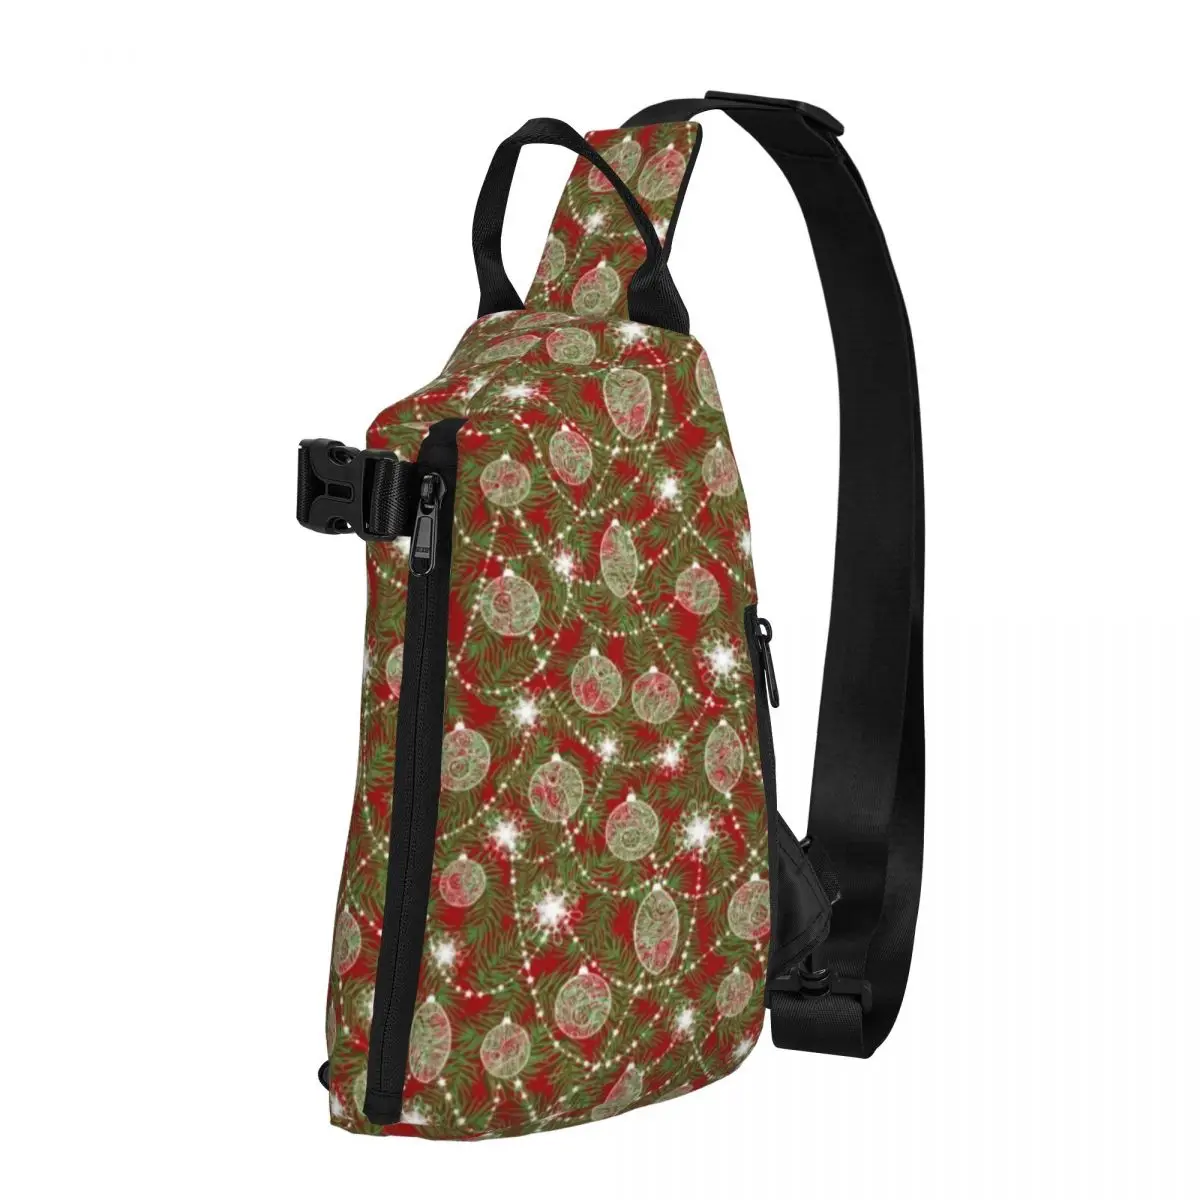 

Сумка на плечо с принтом рождественской елки, нагрудная мужская сумочка с праздничным принтом для рыбалки, Треккинговая индивидуальная слинг-сумка, уличная одежда, деловые маленькие сумки